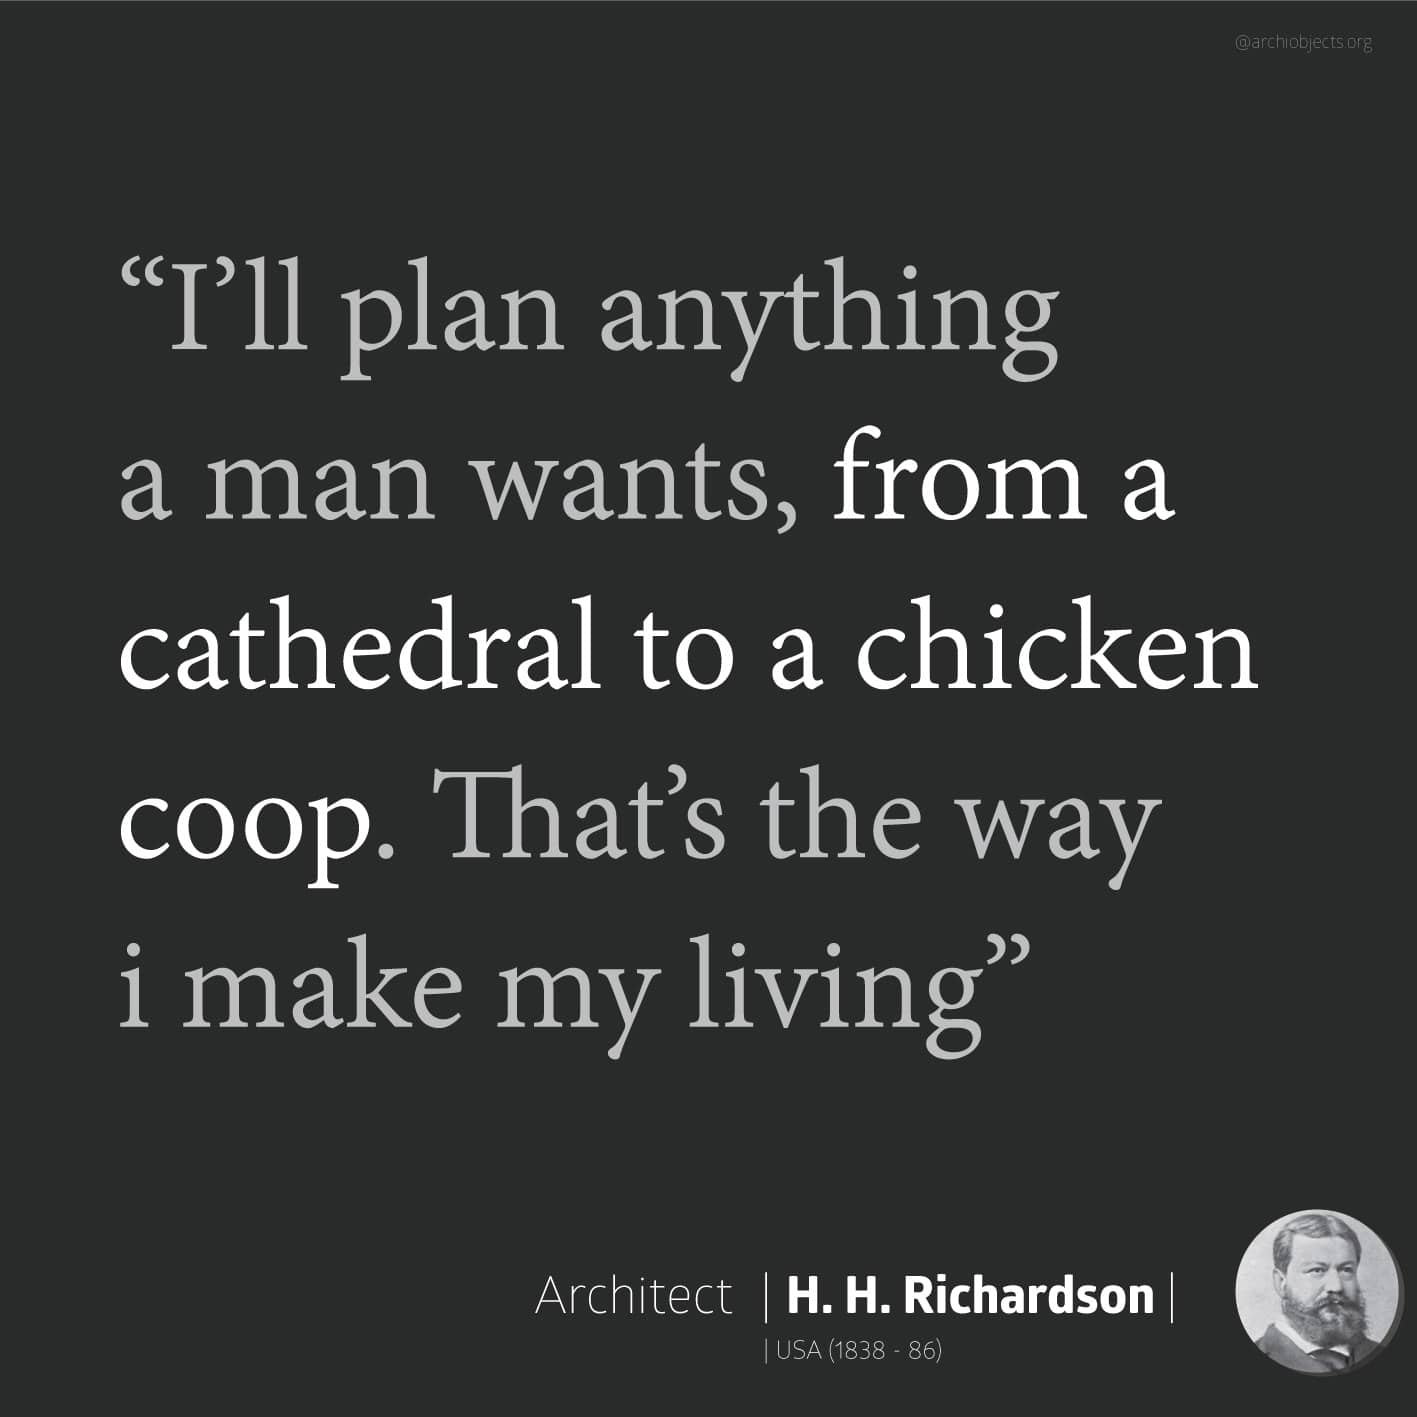 richardson quote